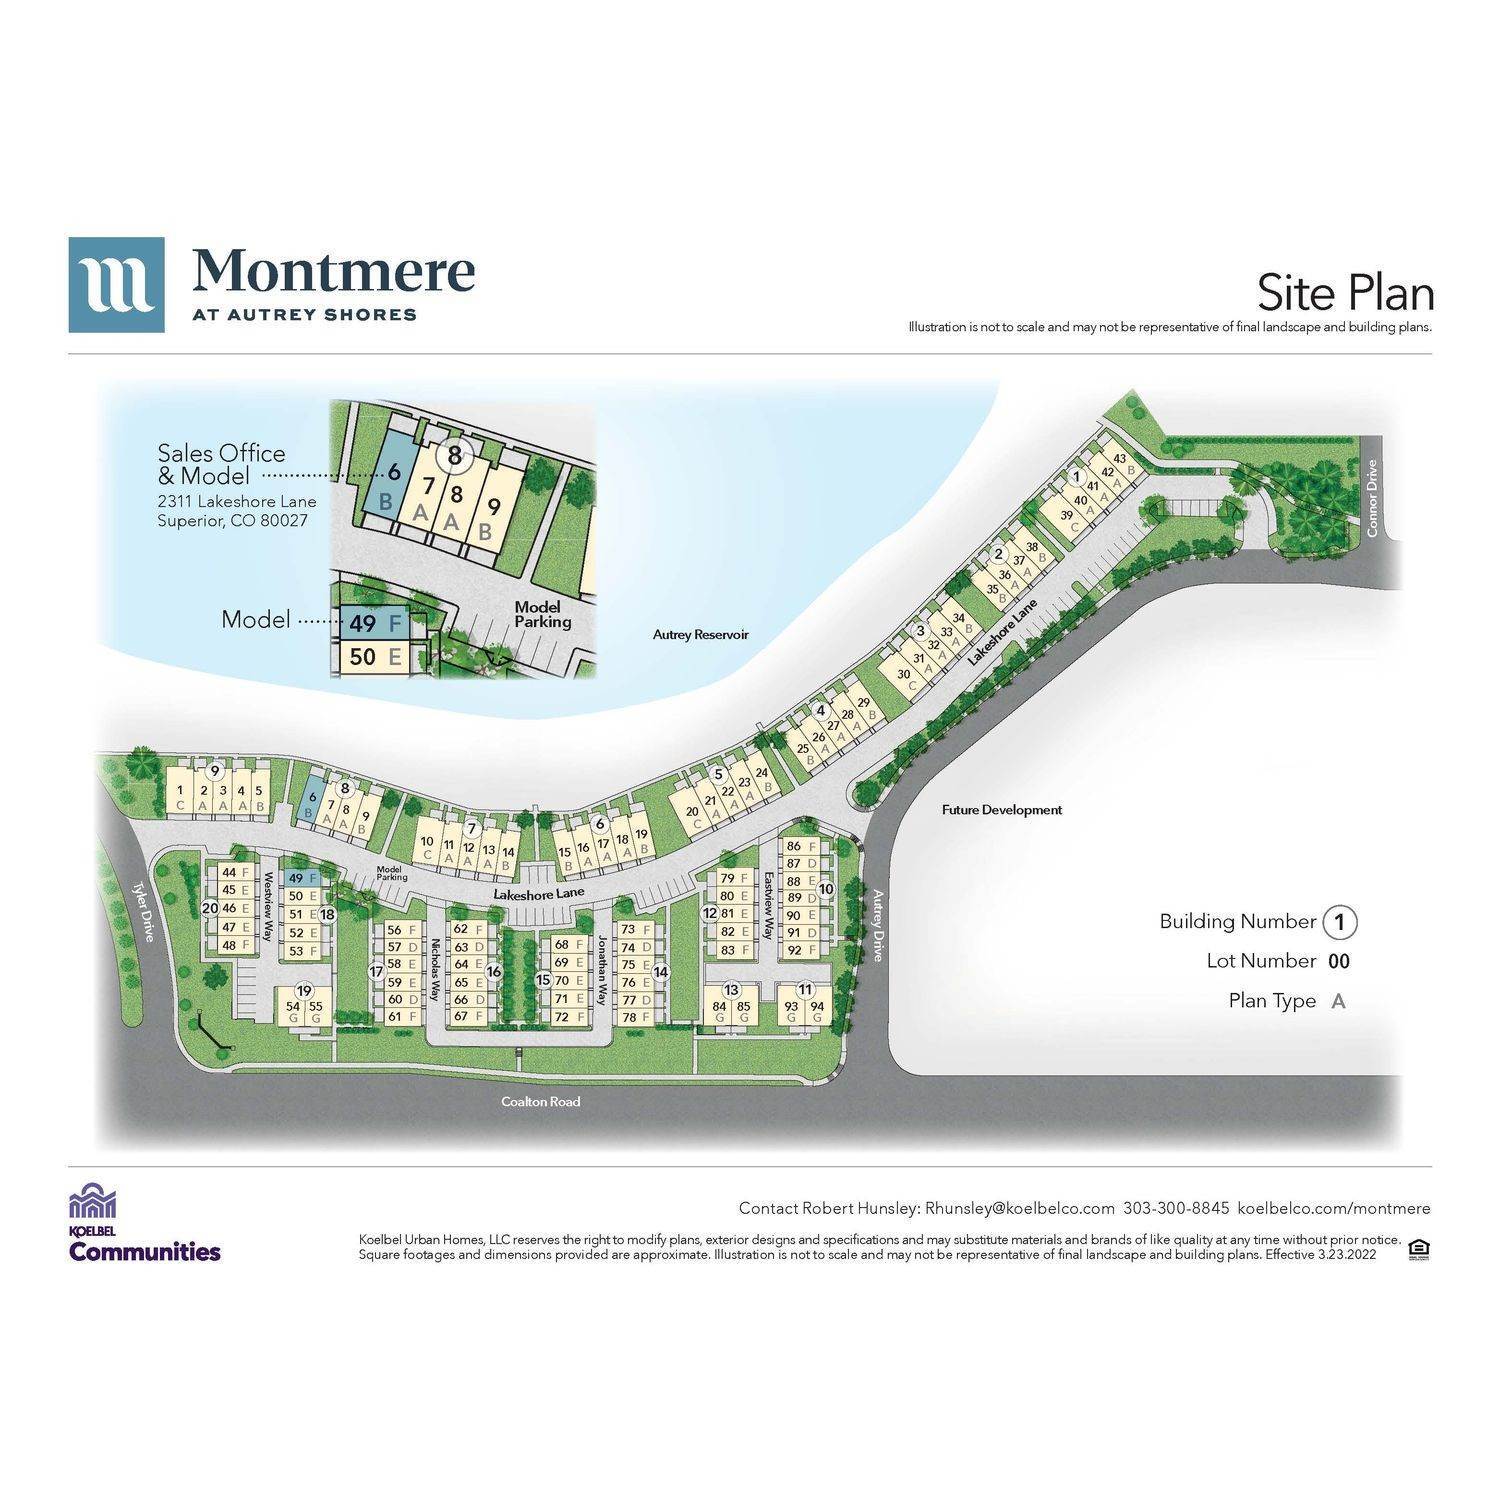 Montmere at Autrey Shores здание в 2311 Lakeshore Lane, Superior, CO 80027